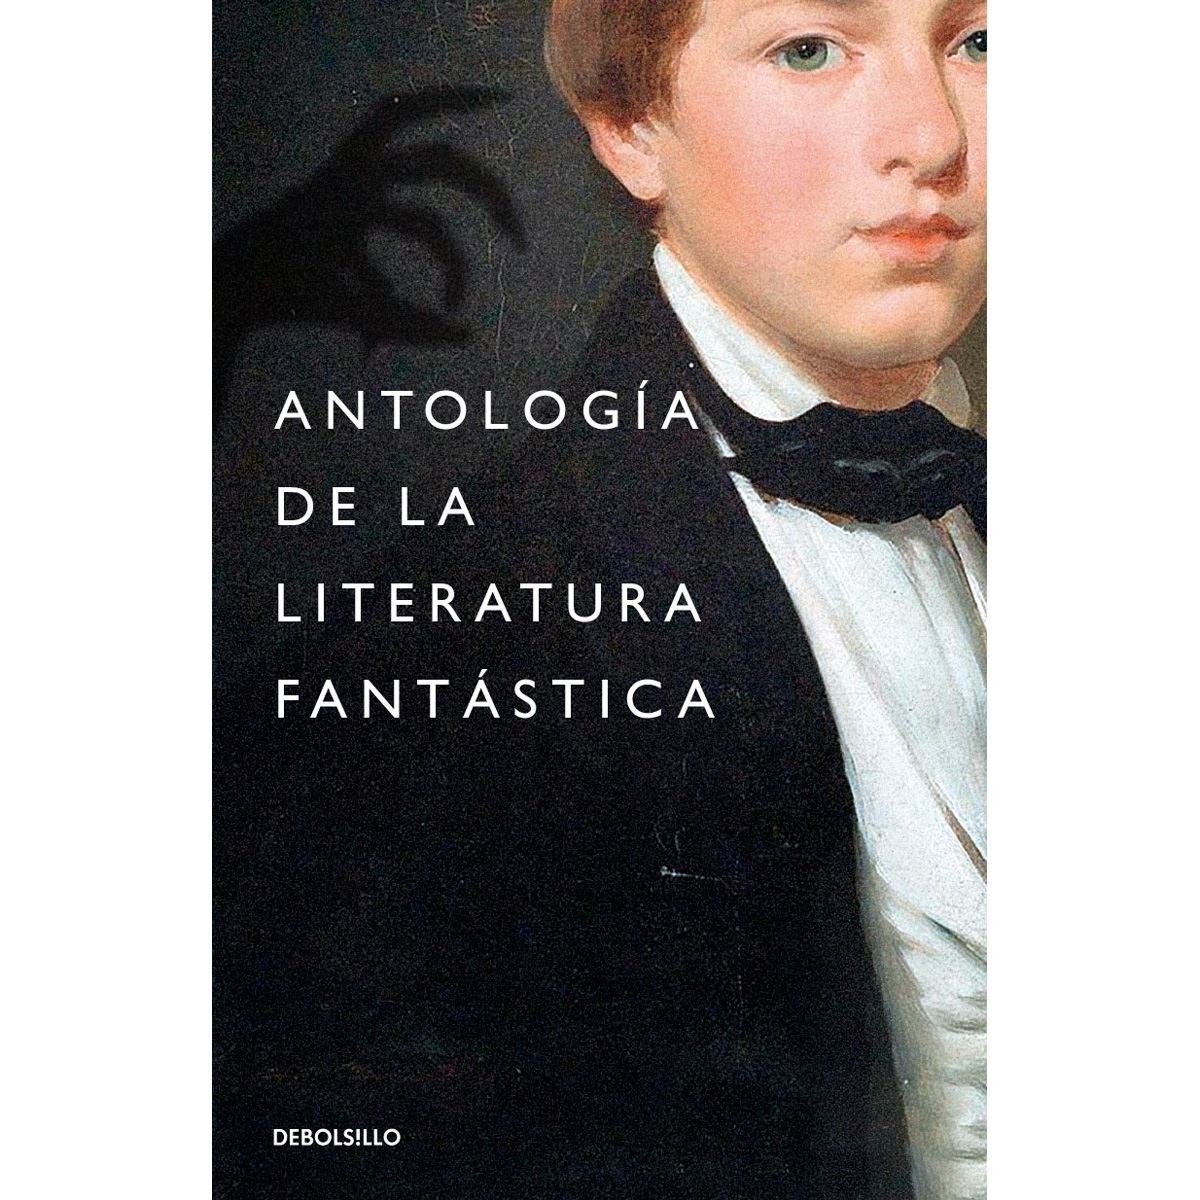 Antologia de la literatura fantastica